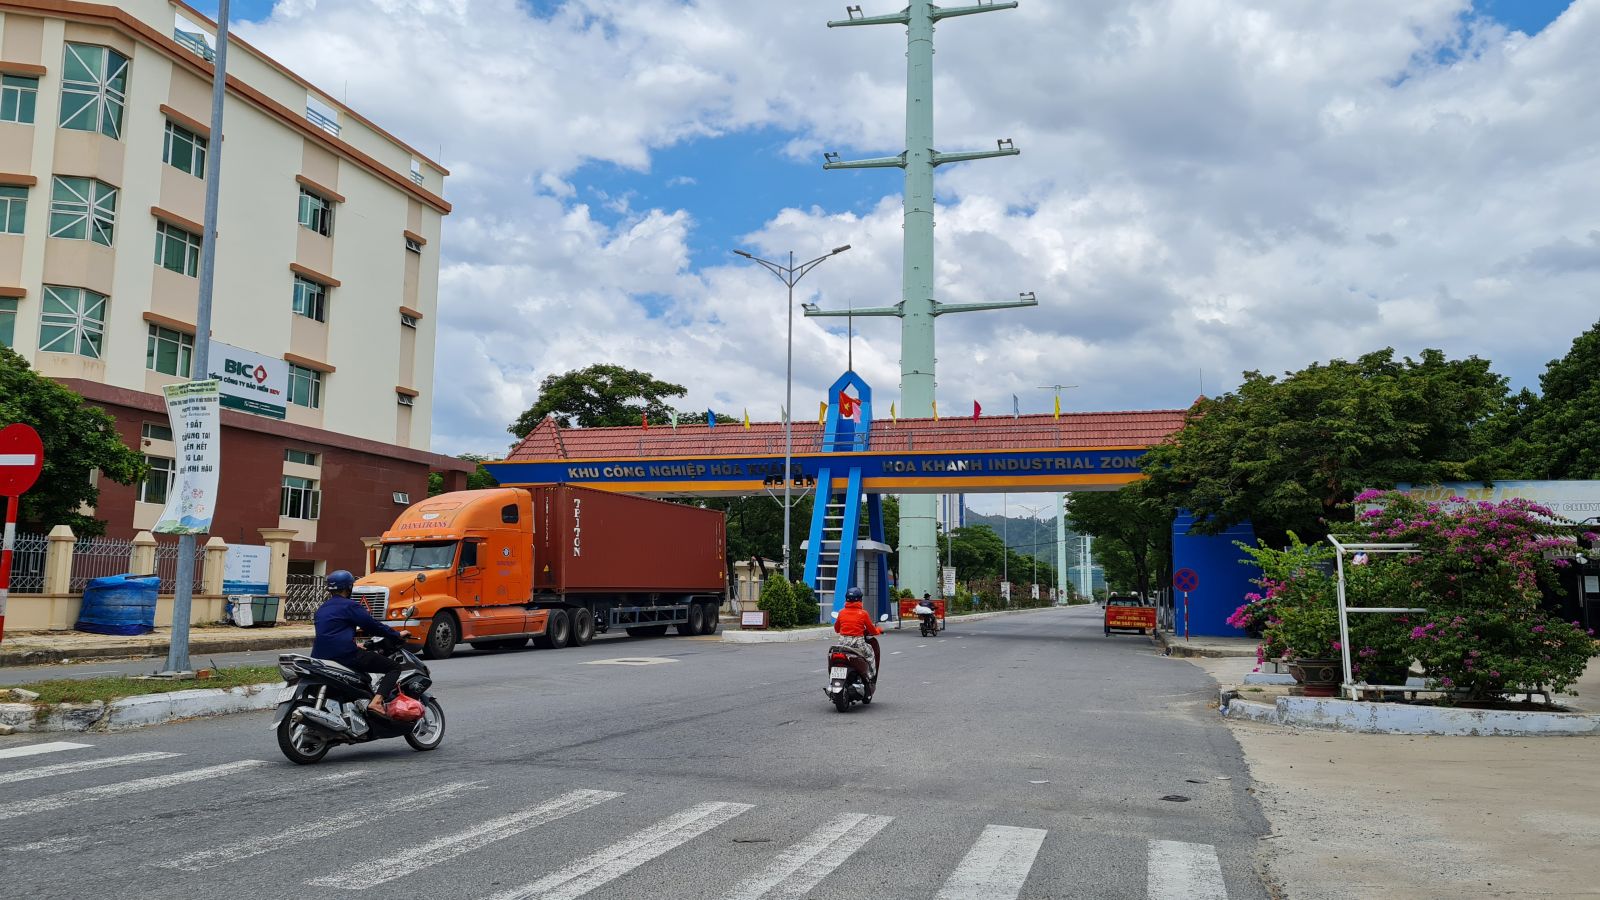 Bất động sản công nghiệp tại Đà Nẵng thời gian qua đã thu hút được nhiều nhà đầu tư - là điểm sáng phát triển kinh tế của TP. Đà Nẵng.